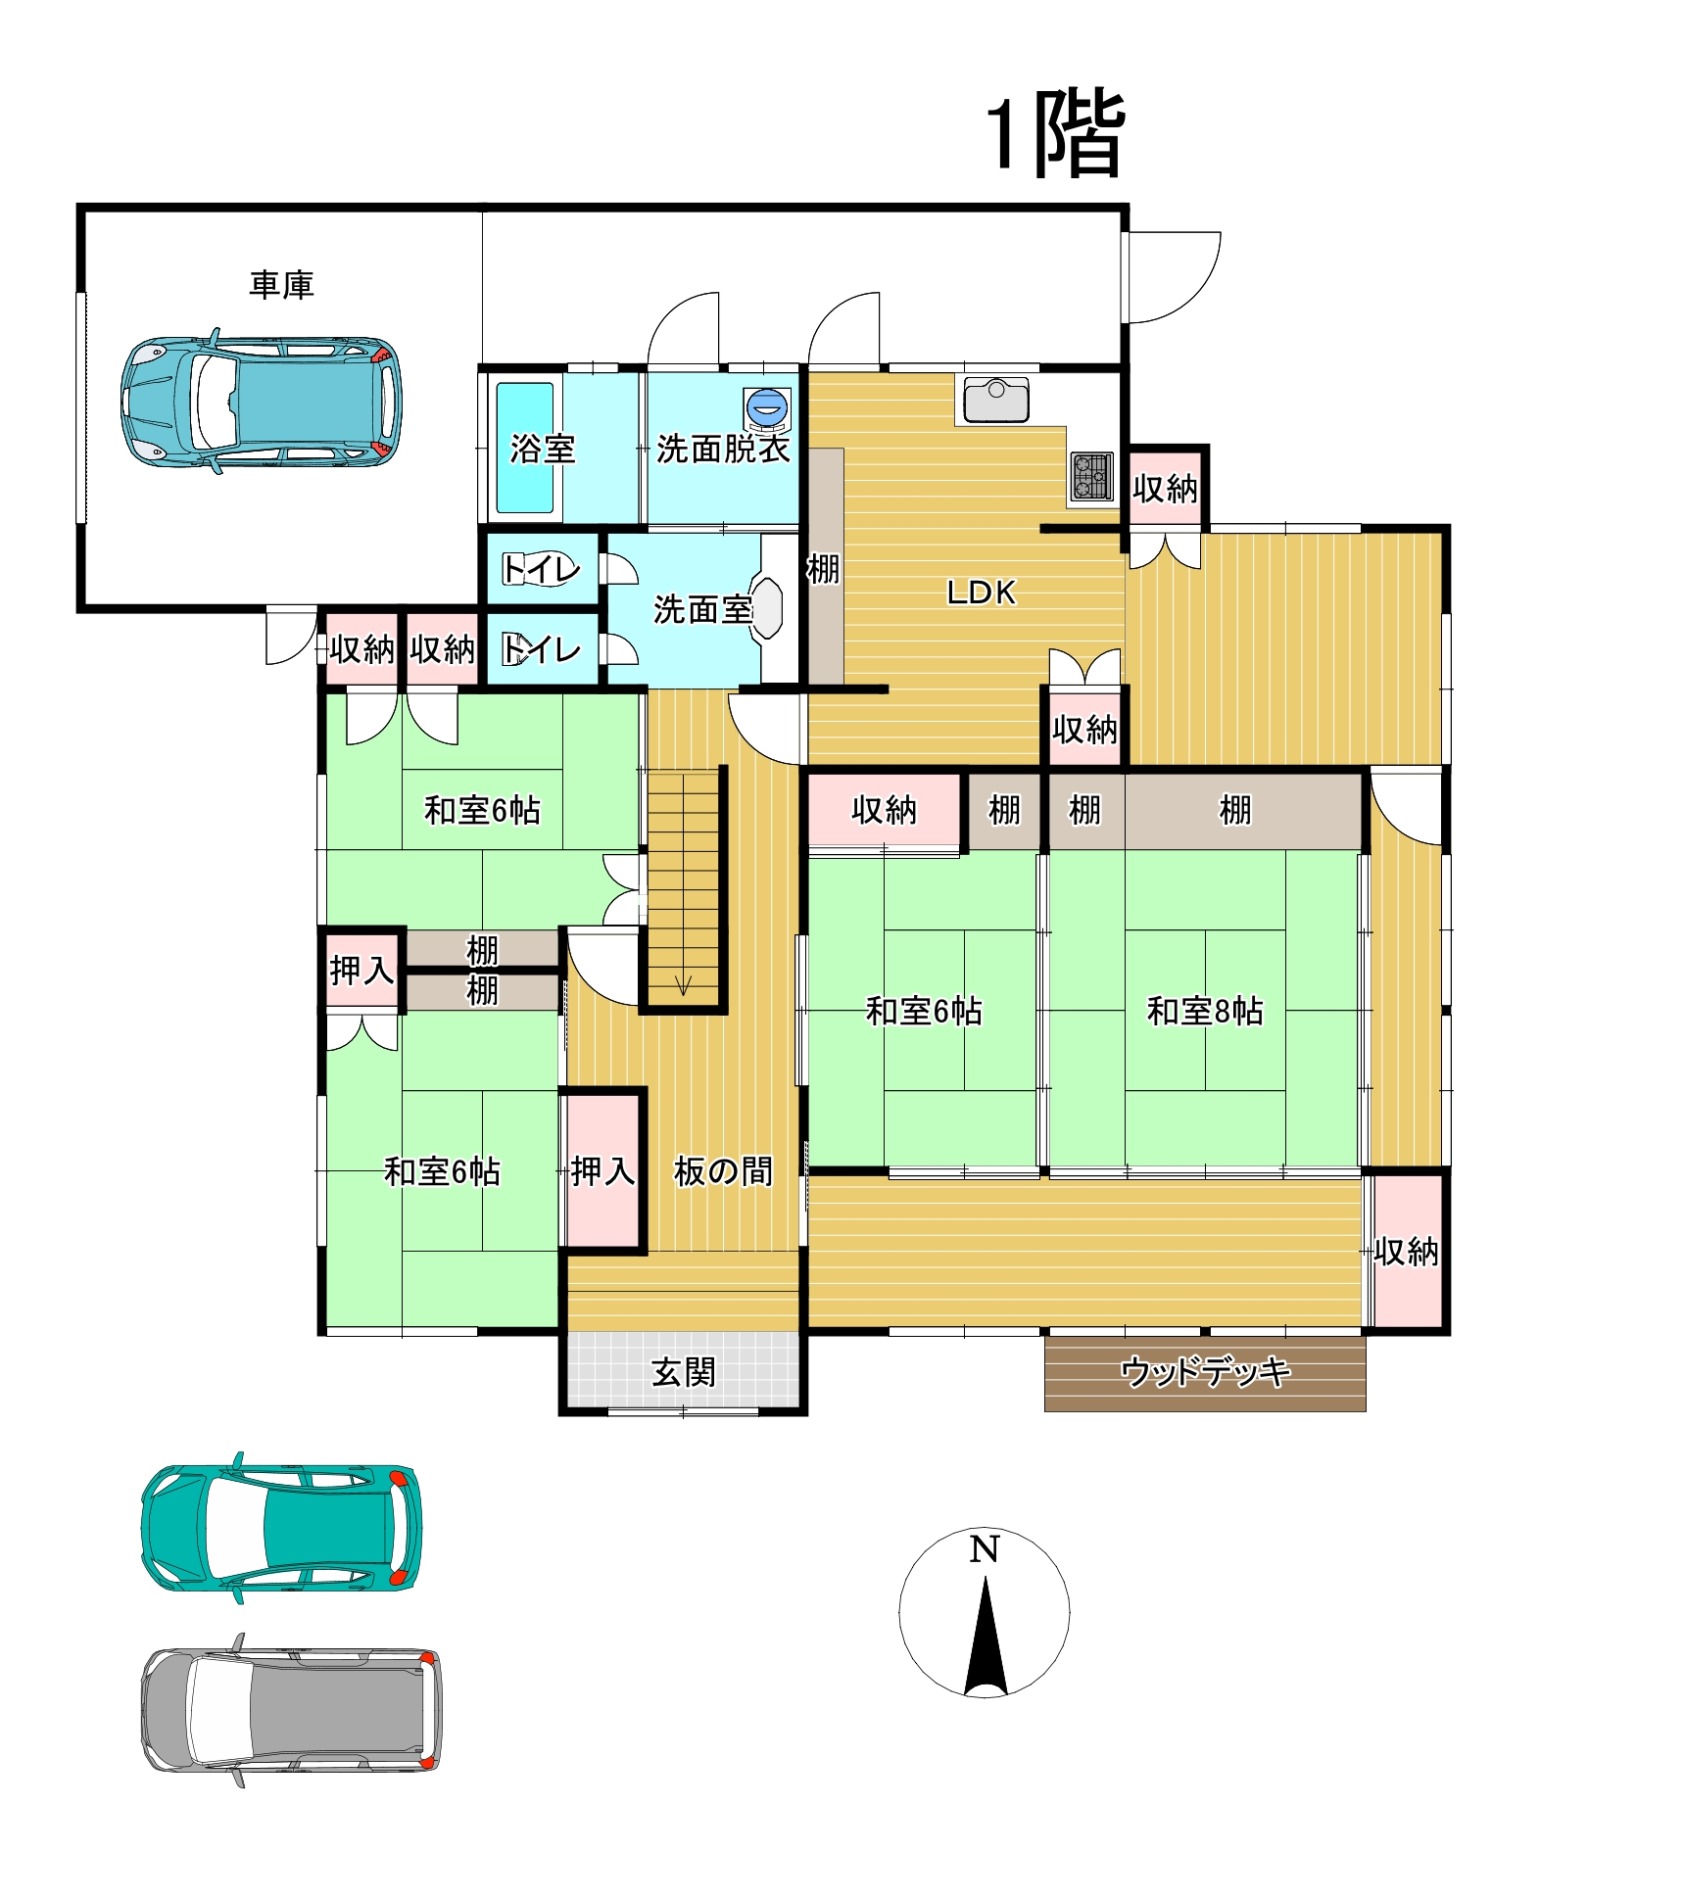 門川町  中古住宅  6LDK  駐車場３台間取・配置図